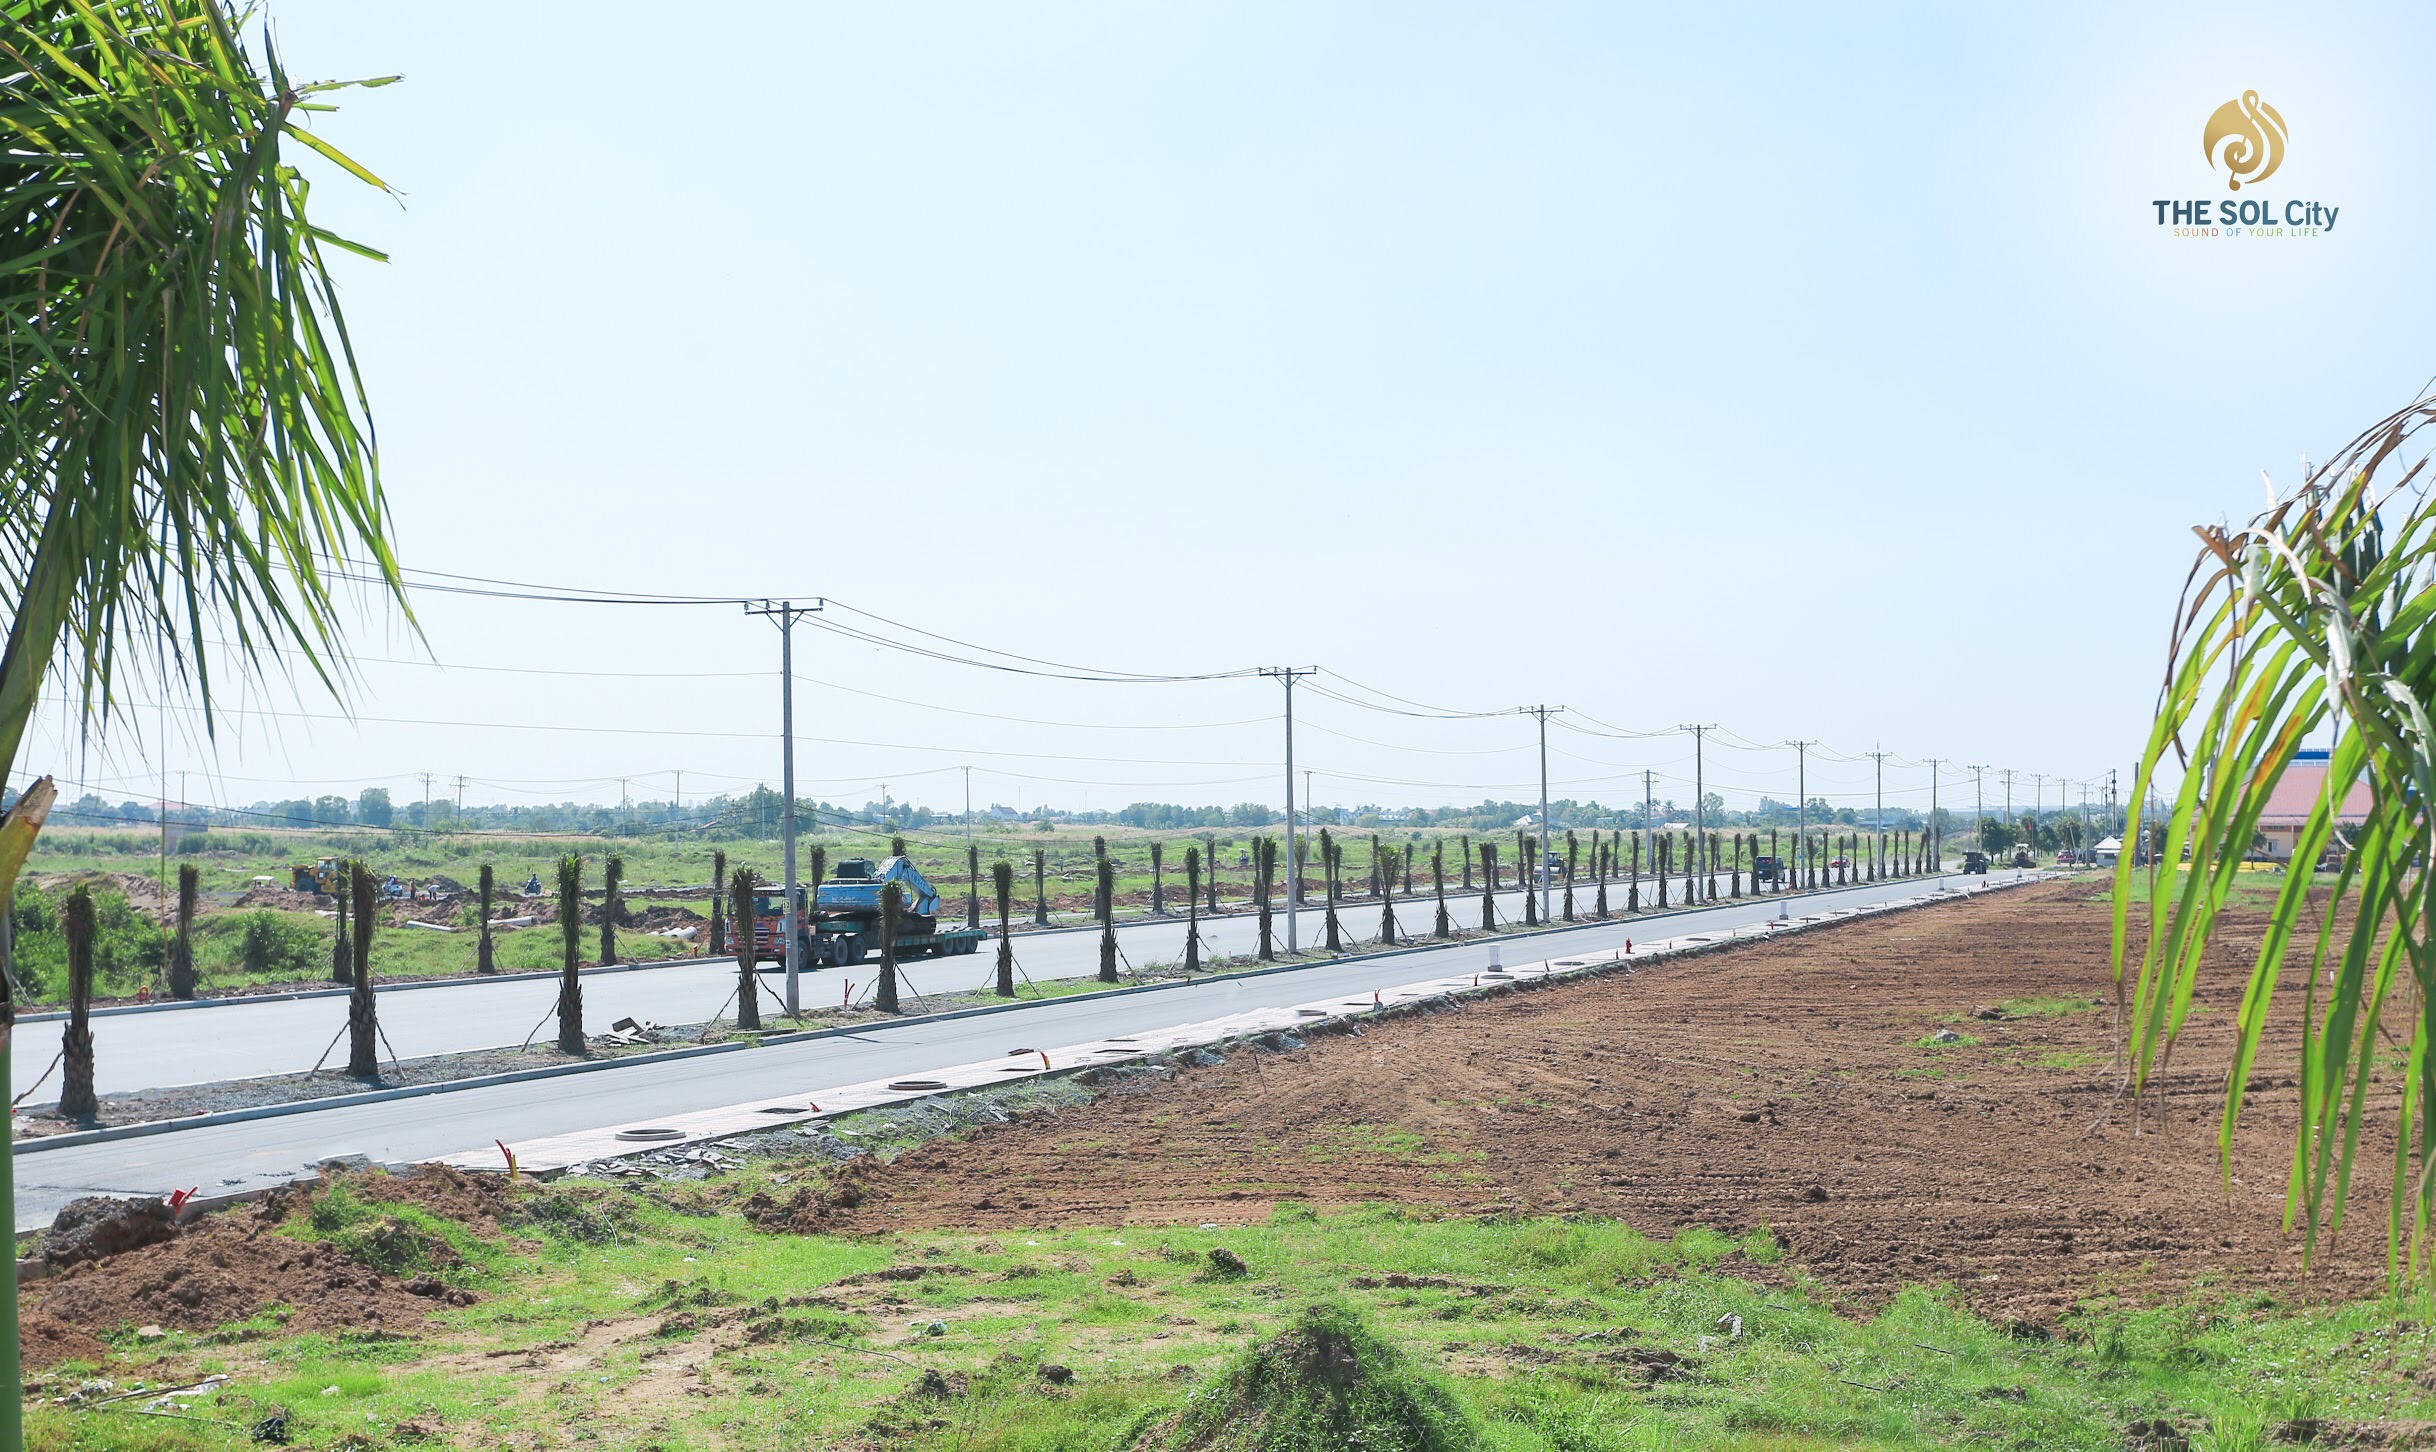 Cở sở hạ tầng dự án The Sol City Nam Sài Gòn Thắng Lợi đang dần hoàn thiện đồng bộ để kịp mở bán ngày 10/01/2021.